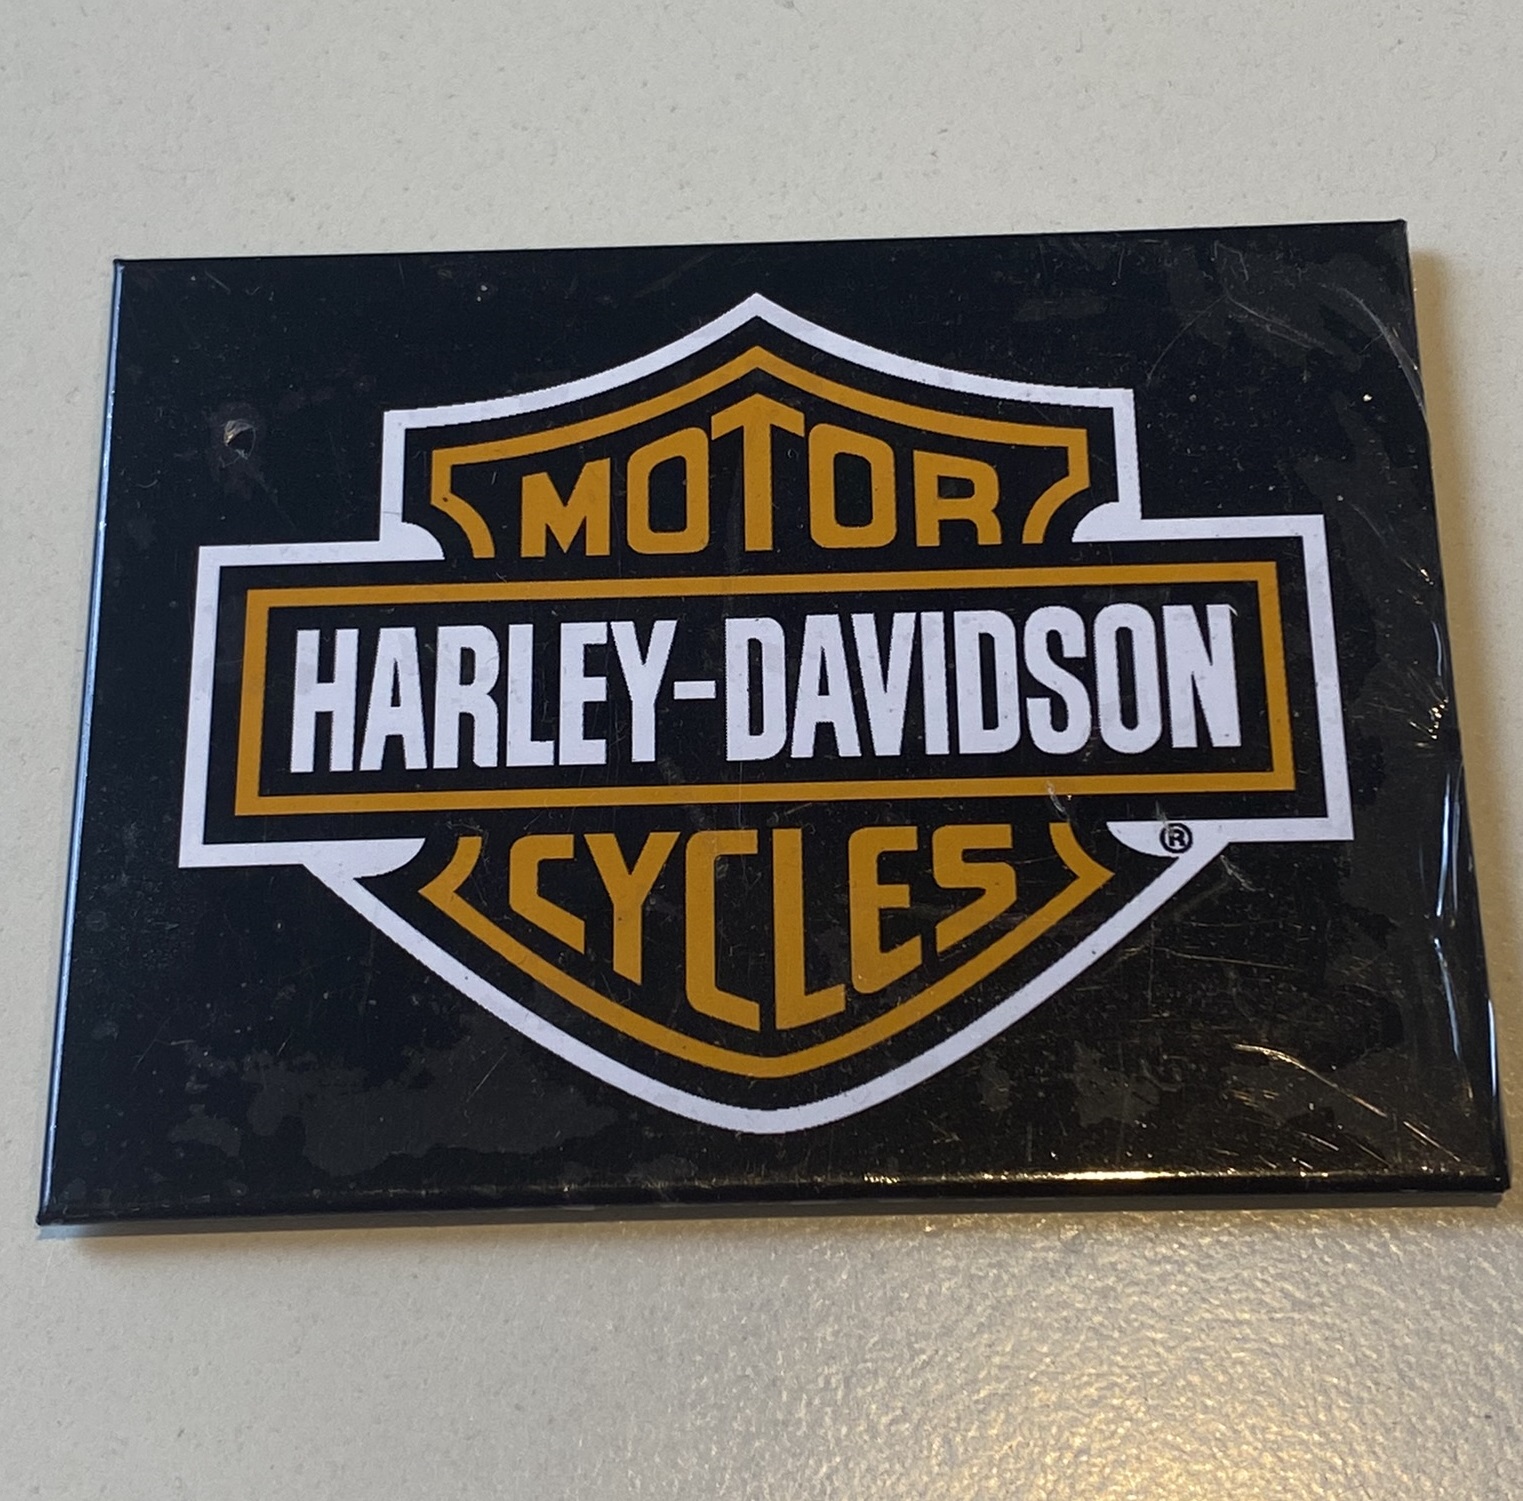 Kühlschrankmagnet - Magnet - Motiv -  Motor Harley-Davidson Cycles